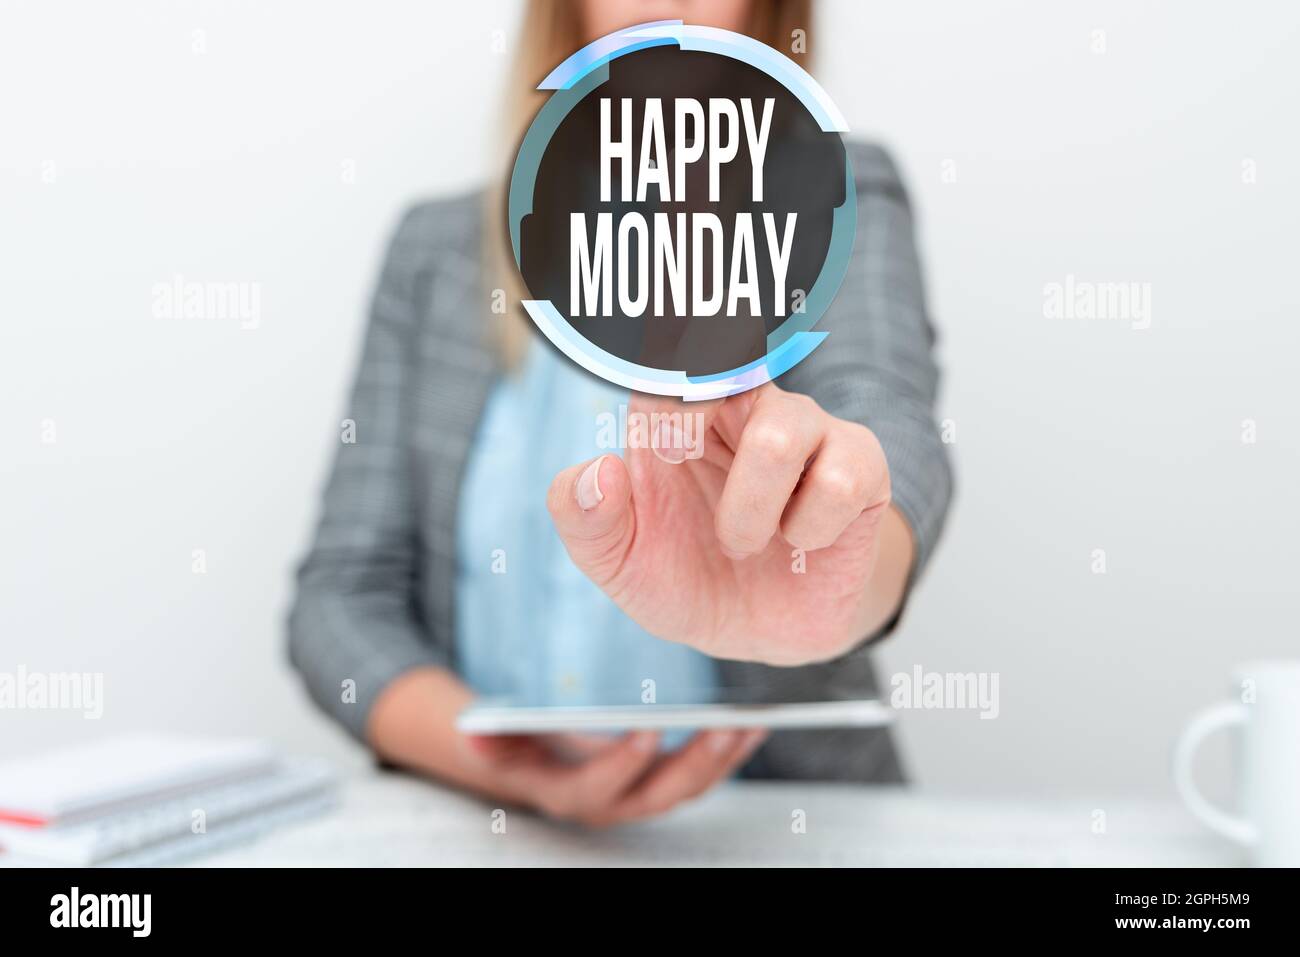 Handschrift Text Happy Monday. Konzept bedeutet, dass die Person zu sagen, um ihm zu wünschen große neue Woche mit neuen Smartphone-Technologie, diskutieren Stockfoto